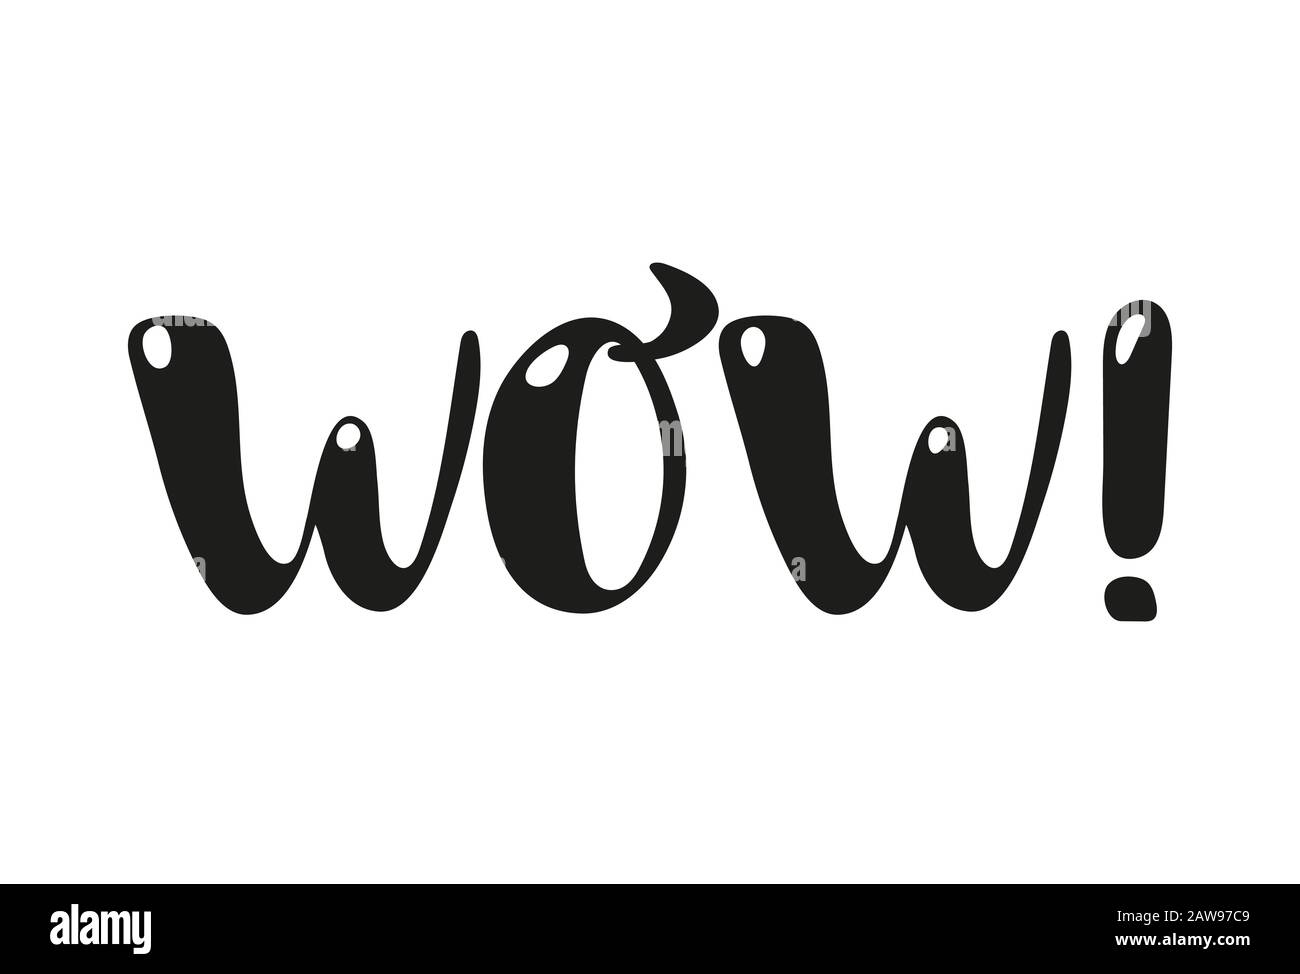 Testo disegnato a mano wow word nero isolato su sfondo bianco. Caratteri semplici. Illustrazione del vettore Illustrazione Vettoriale